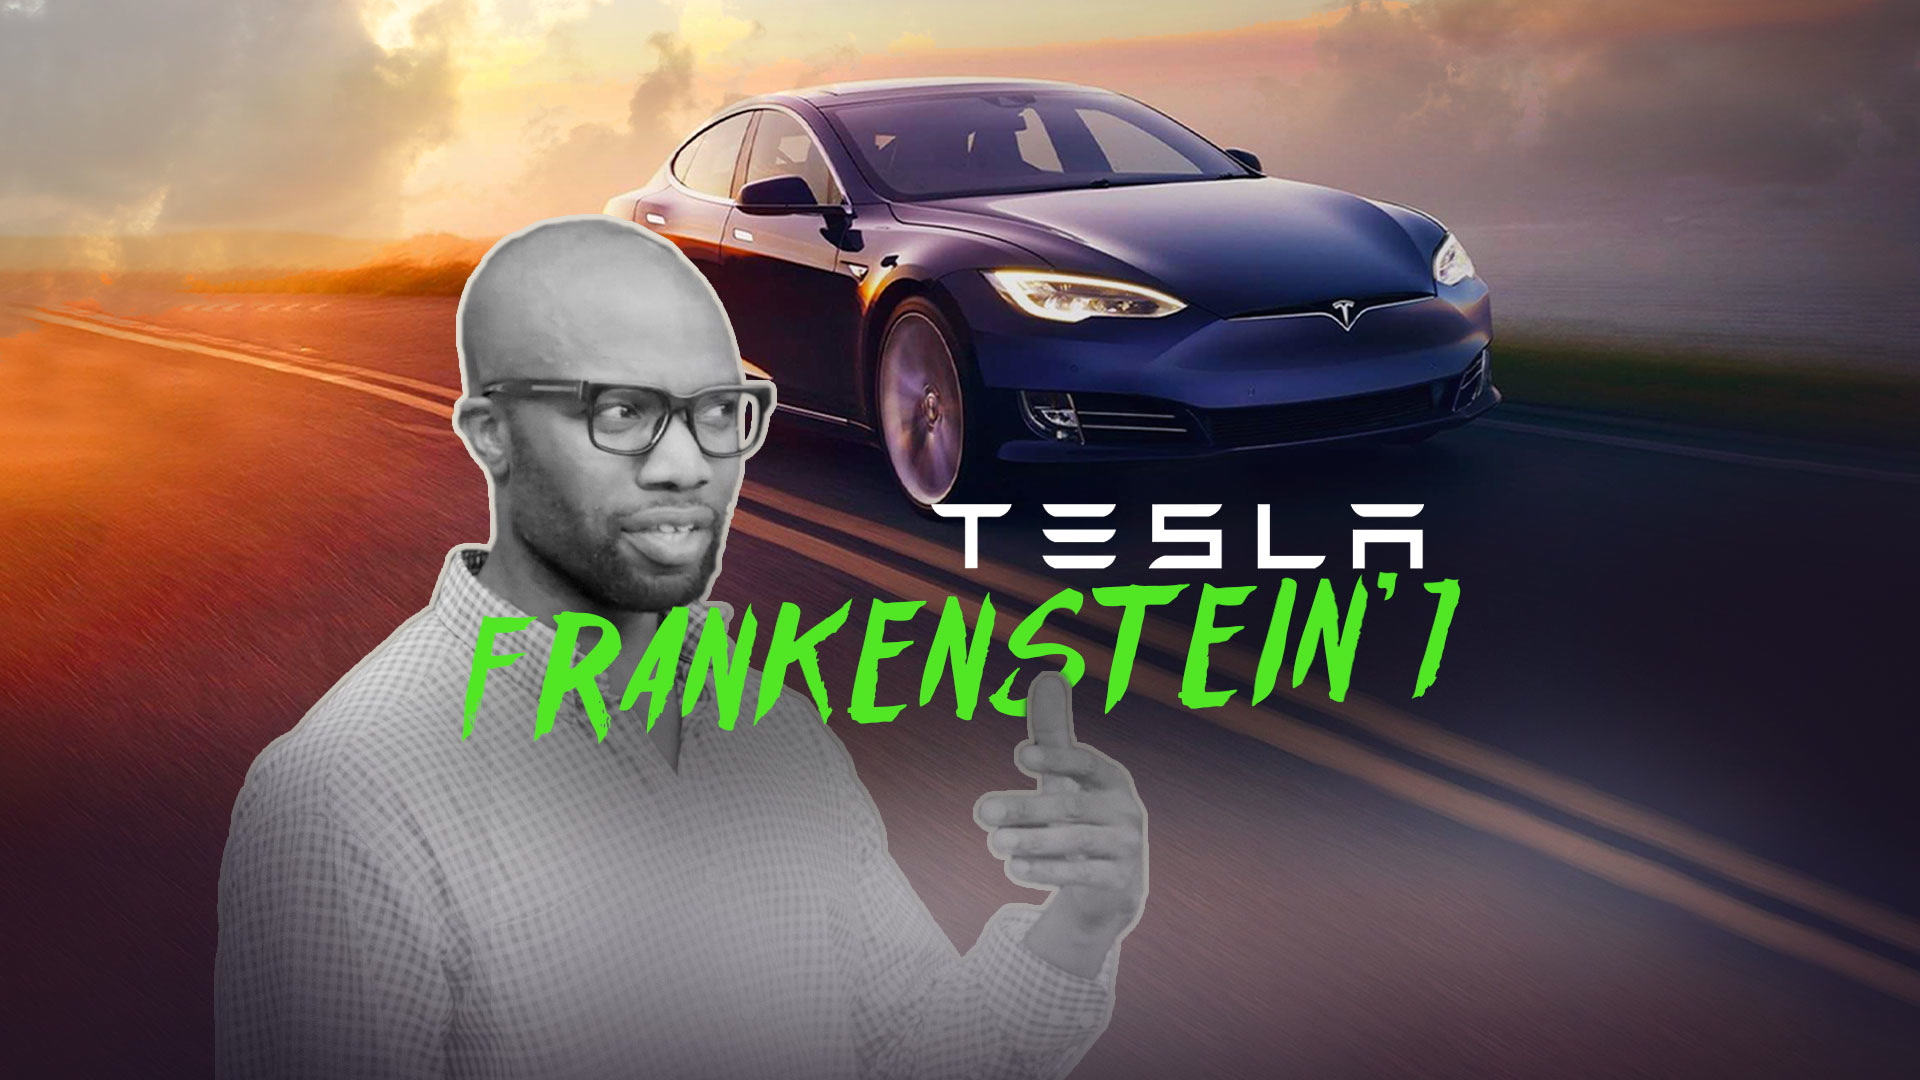 Tesla'nın Doktor Frankenstein'ı